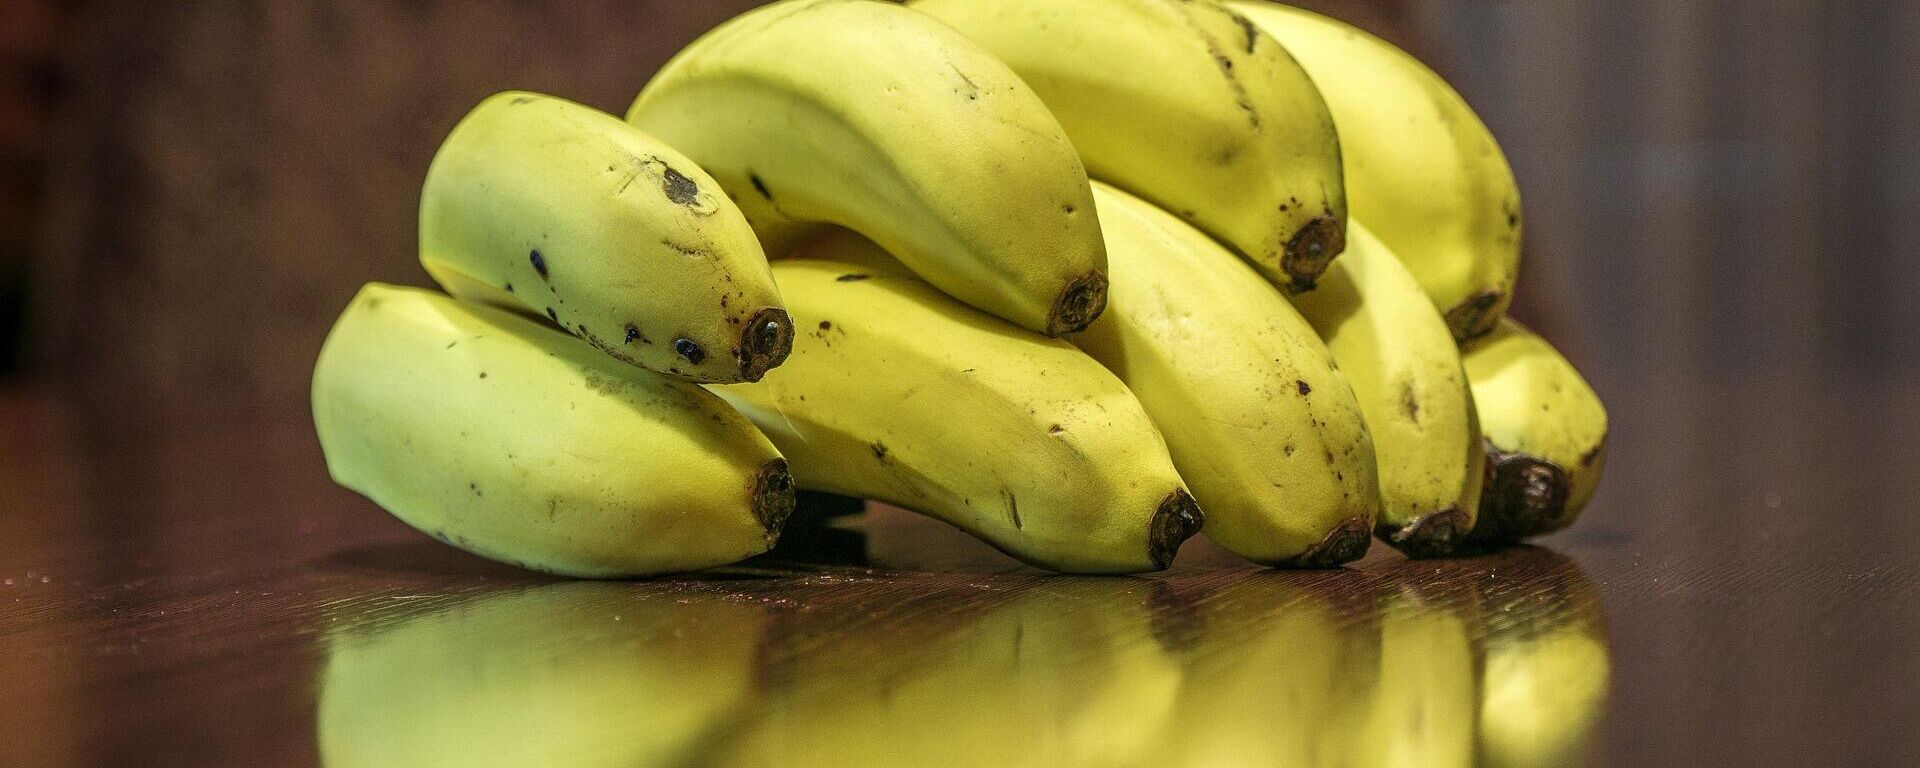 Bananas, plátanos o guineos - Sputnik Mundo, 1920, 05.04.2022